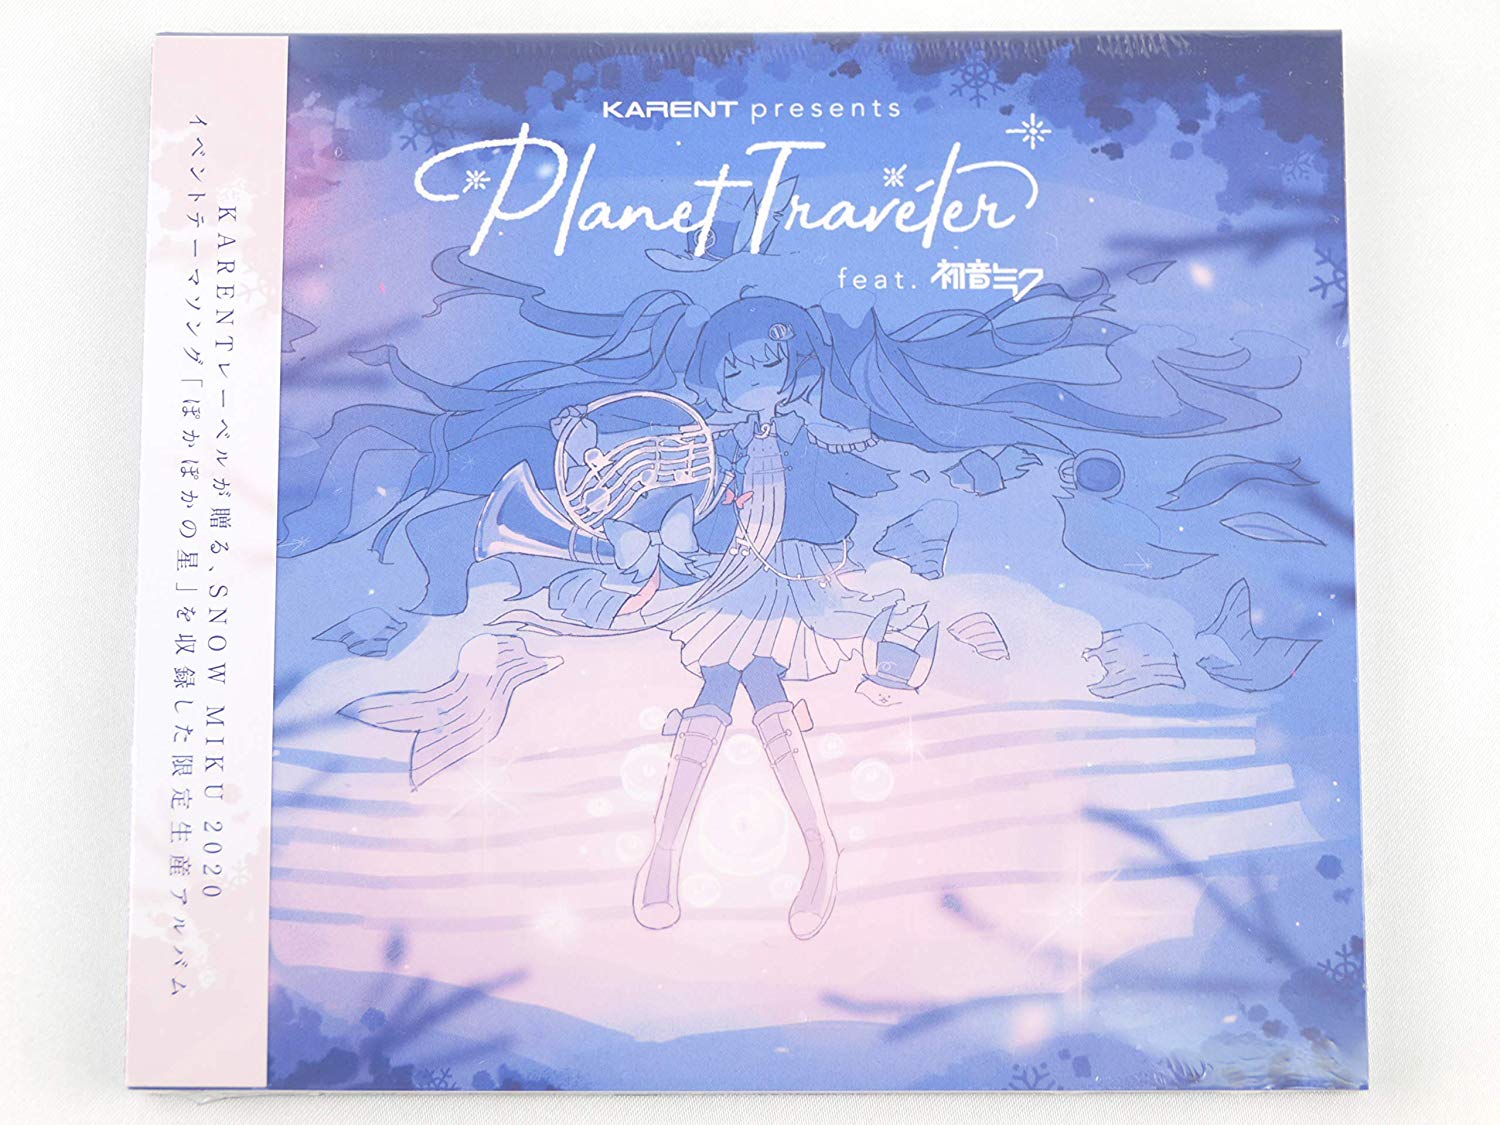 [200122]雪ミク 2020 snow miku CD アルバム Planet Traveler feat. 初音ミク[320K]插图icecomic动漫-云之彼端,约定的地方(´･ᴗ･`)